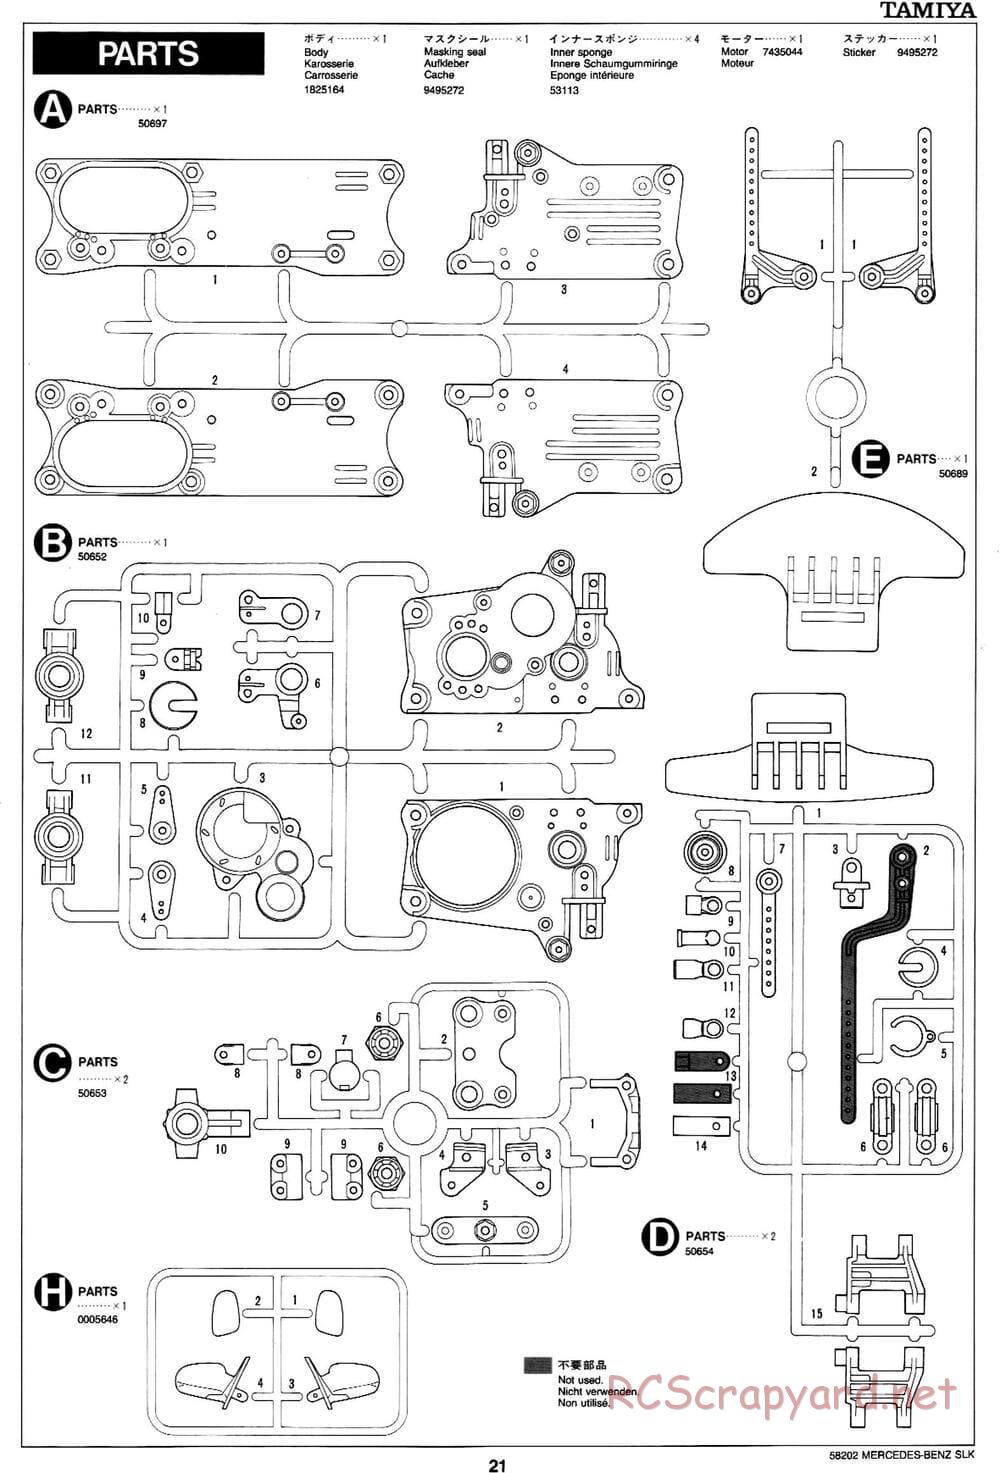 Tamiya - Mercedes-Benz SLK - M02L Chassis - Manual - Page 21